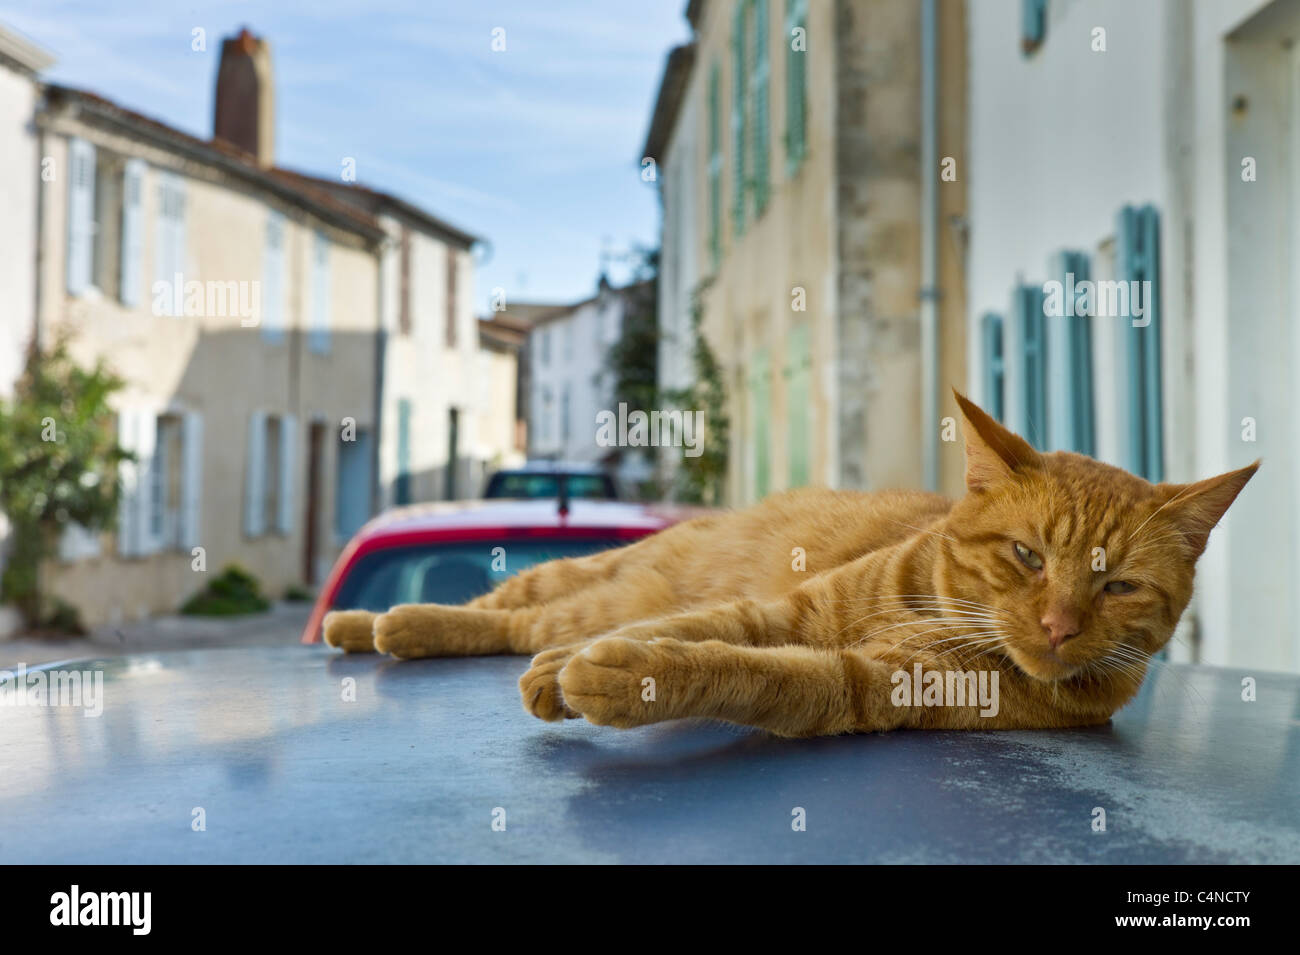 Le gingembre chat posant sur toit brûlant à St Martin de Re, Ile de Re, France Banque D'Images